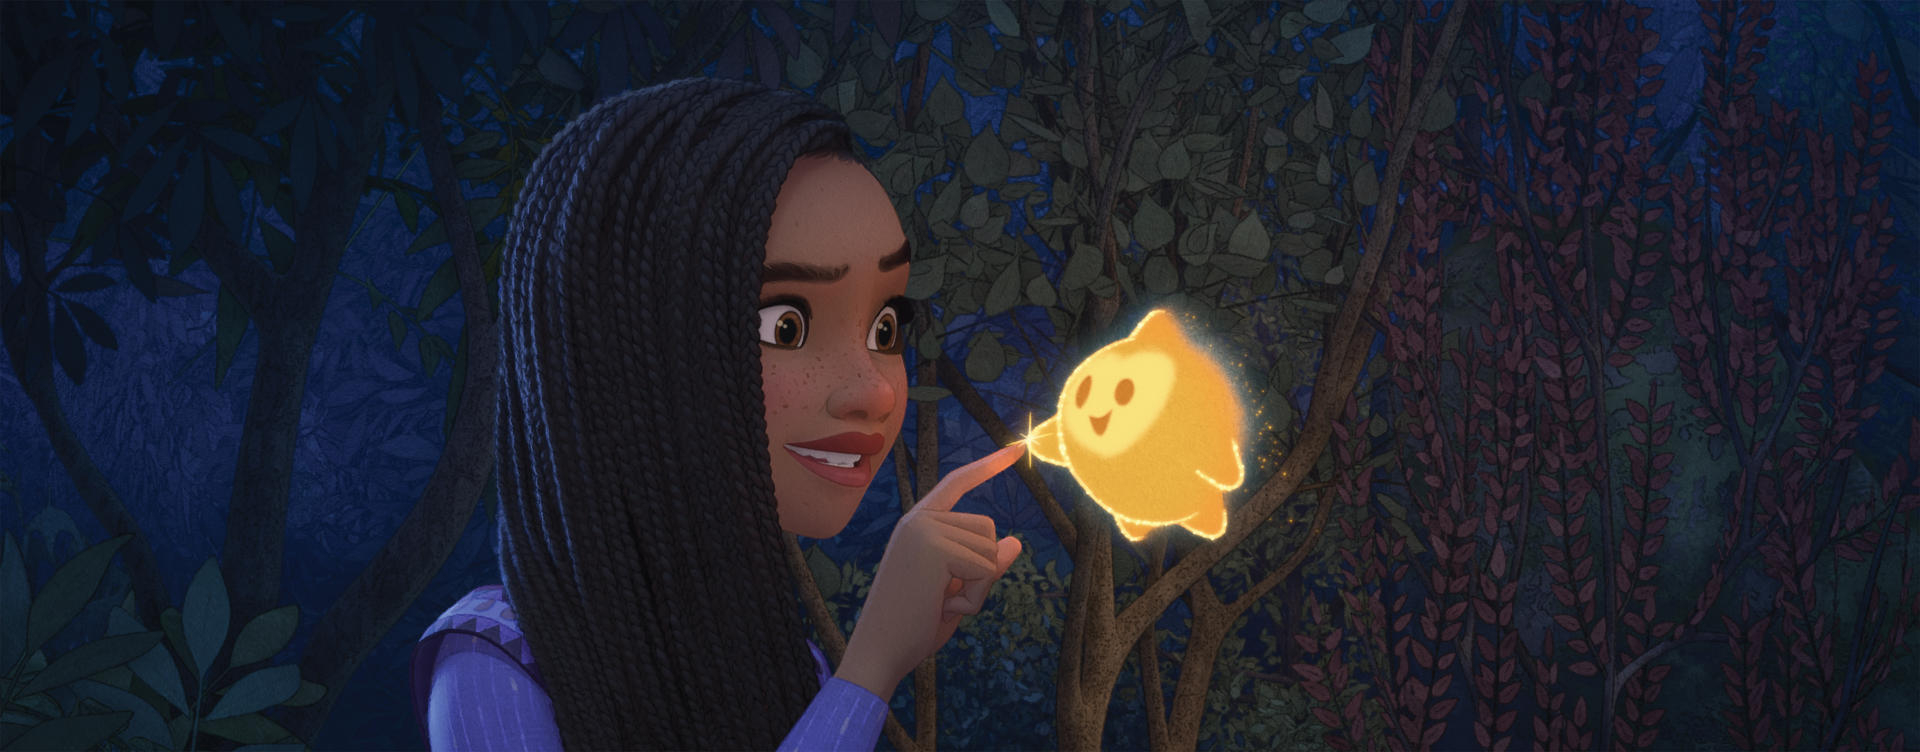 Fotograma cedido por Disney que muestra a Asha y a Star, personajes de la película Wish. EFE/ Cortesía Disney/SOLO USO EDITORIAL/SOLO DISPONIBLE PARA ILUSTRAR LA NOTICIA QUE ACOMPAÑA (CRÉDITO OBLIGATORIO)
